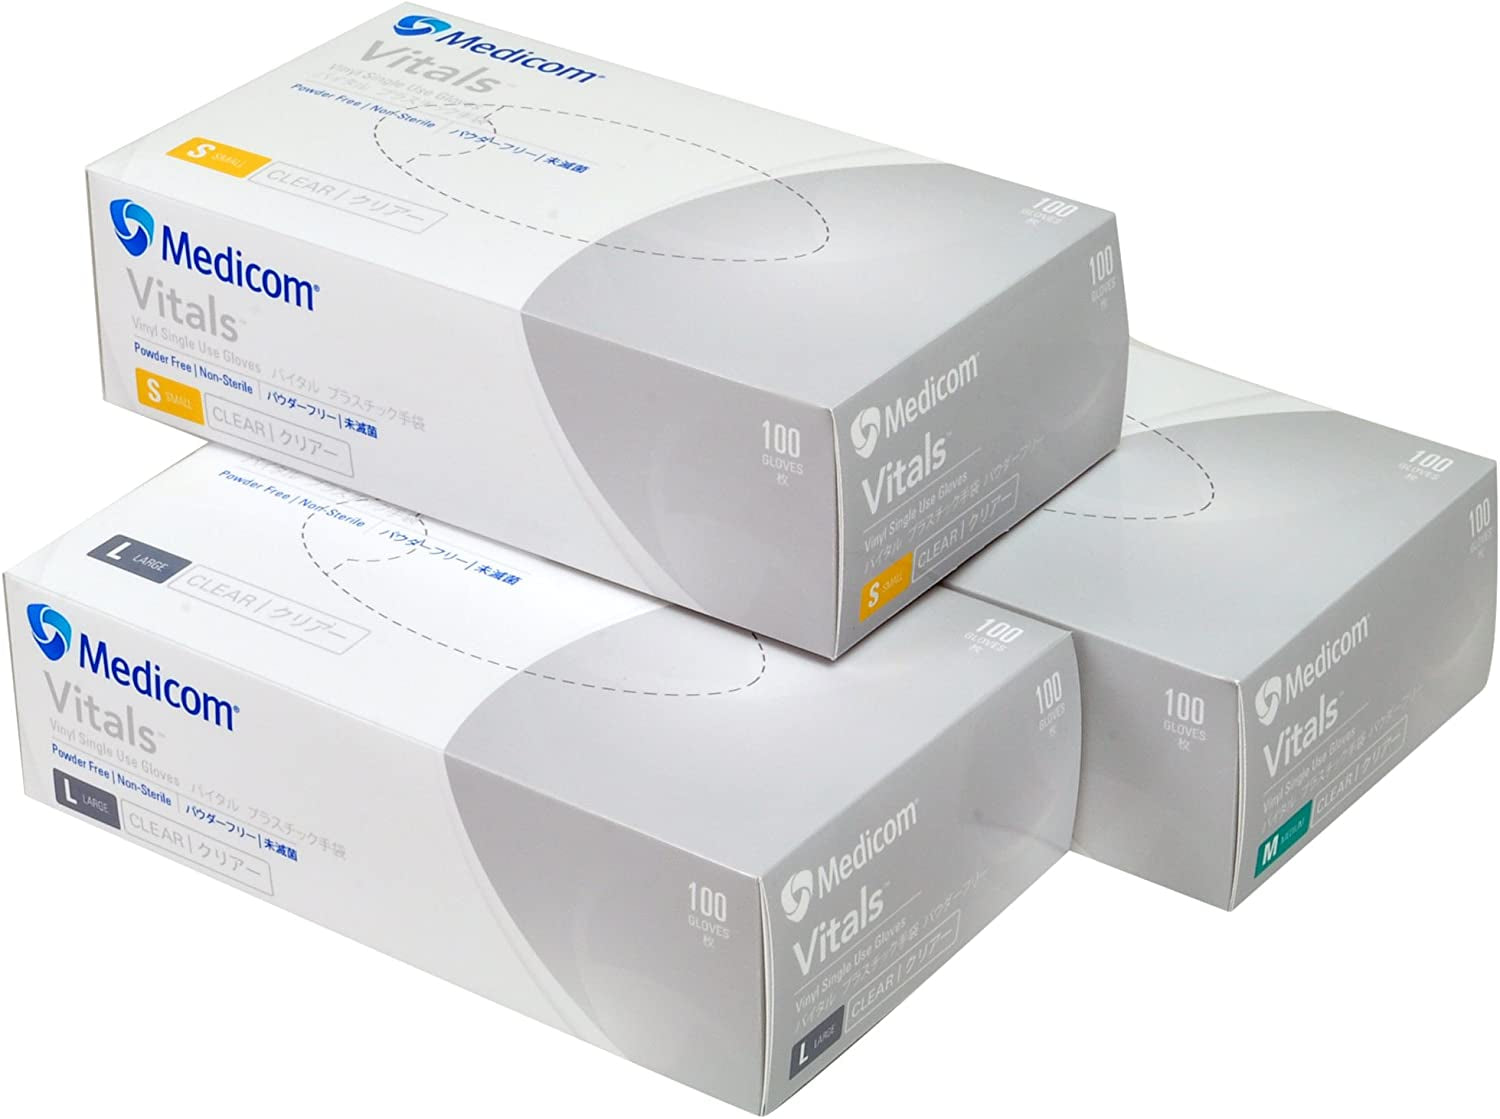 Medicom, Medicom Vitals Vinyl Gloves Powder Free, Clear, Medium, 100 Count